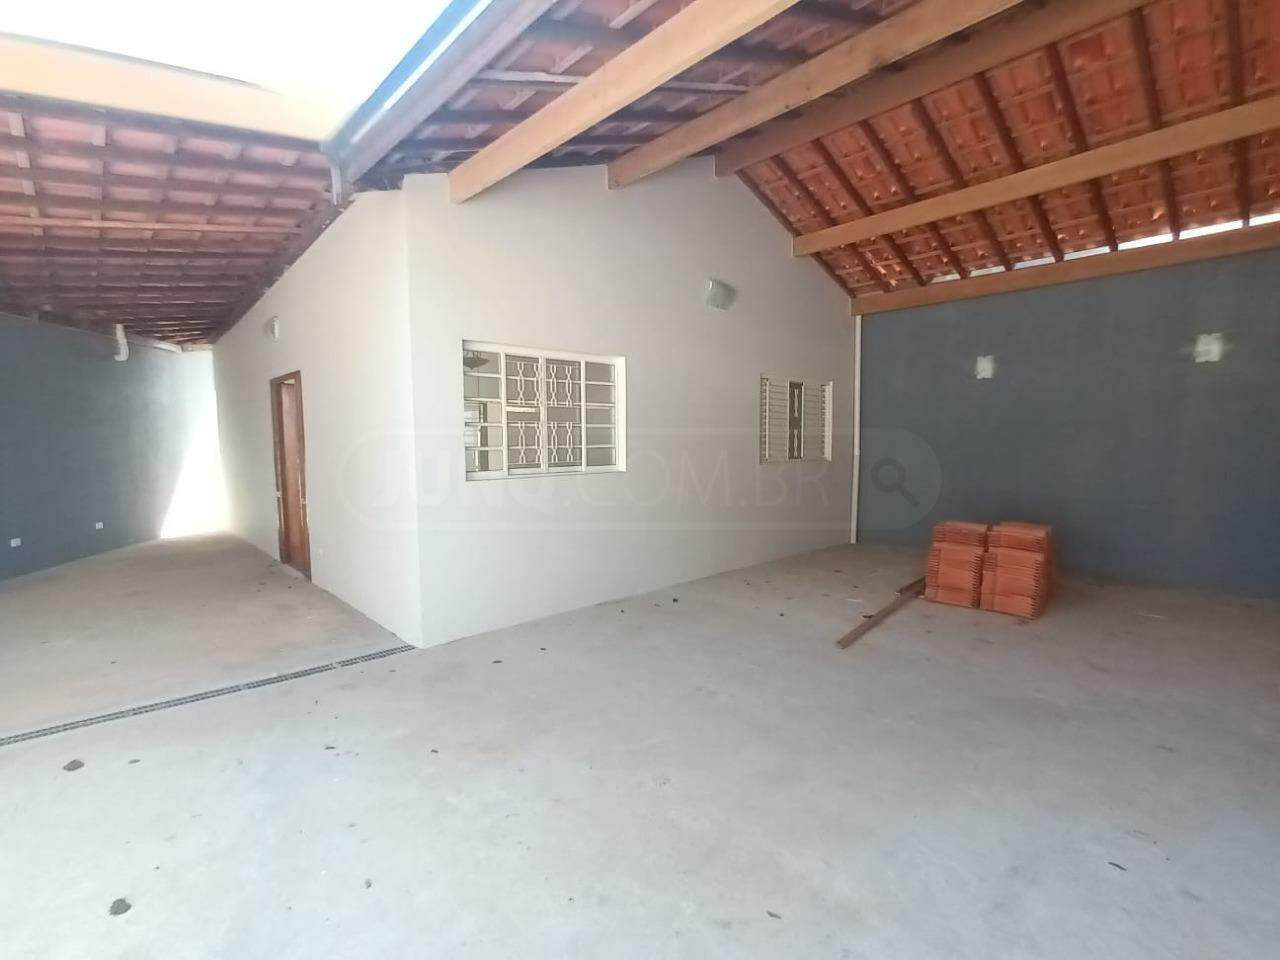 Casa à venda, 2 quartos, 2 vagas, no bairro Santa Rosa em Piracicaba - SP